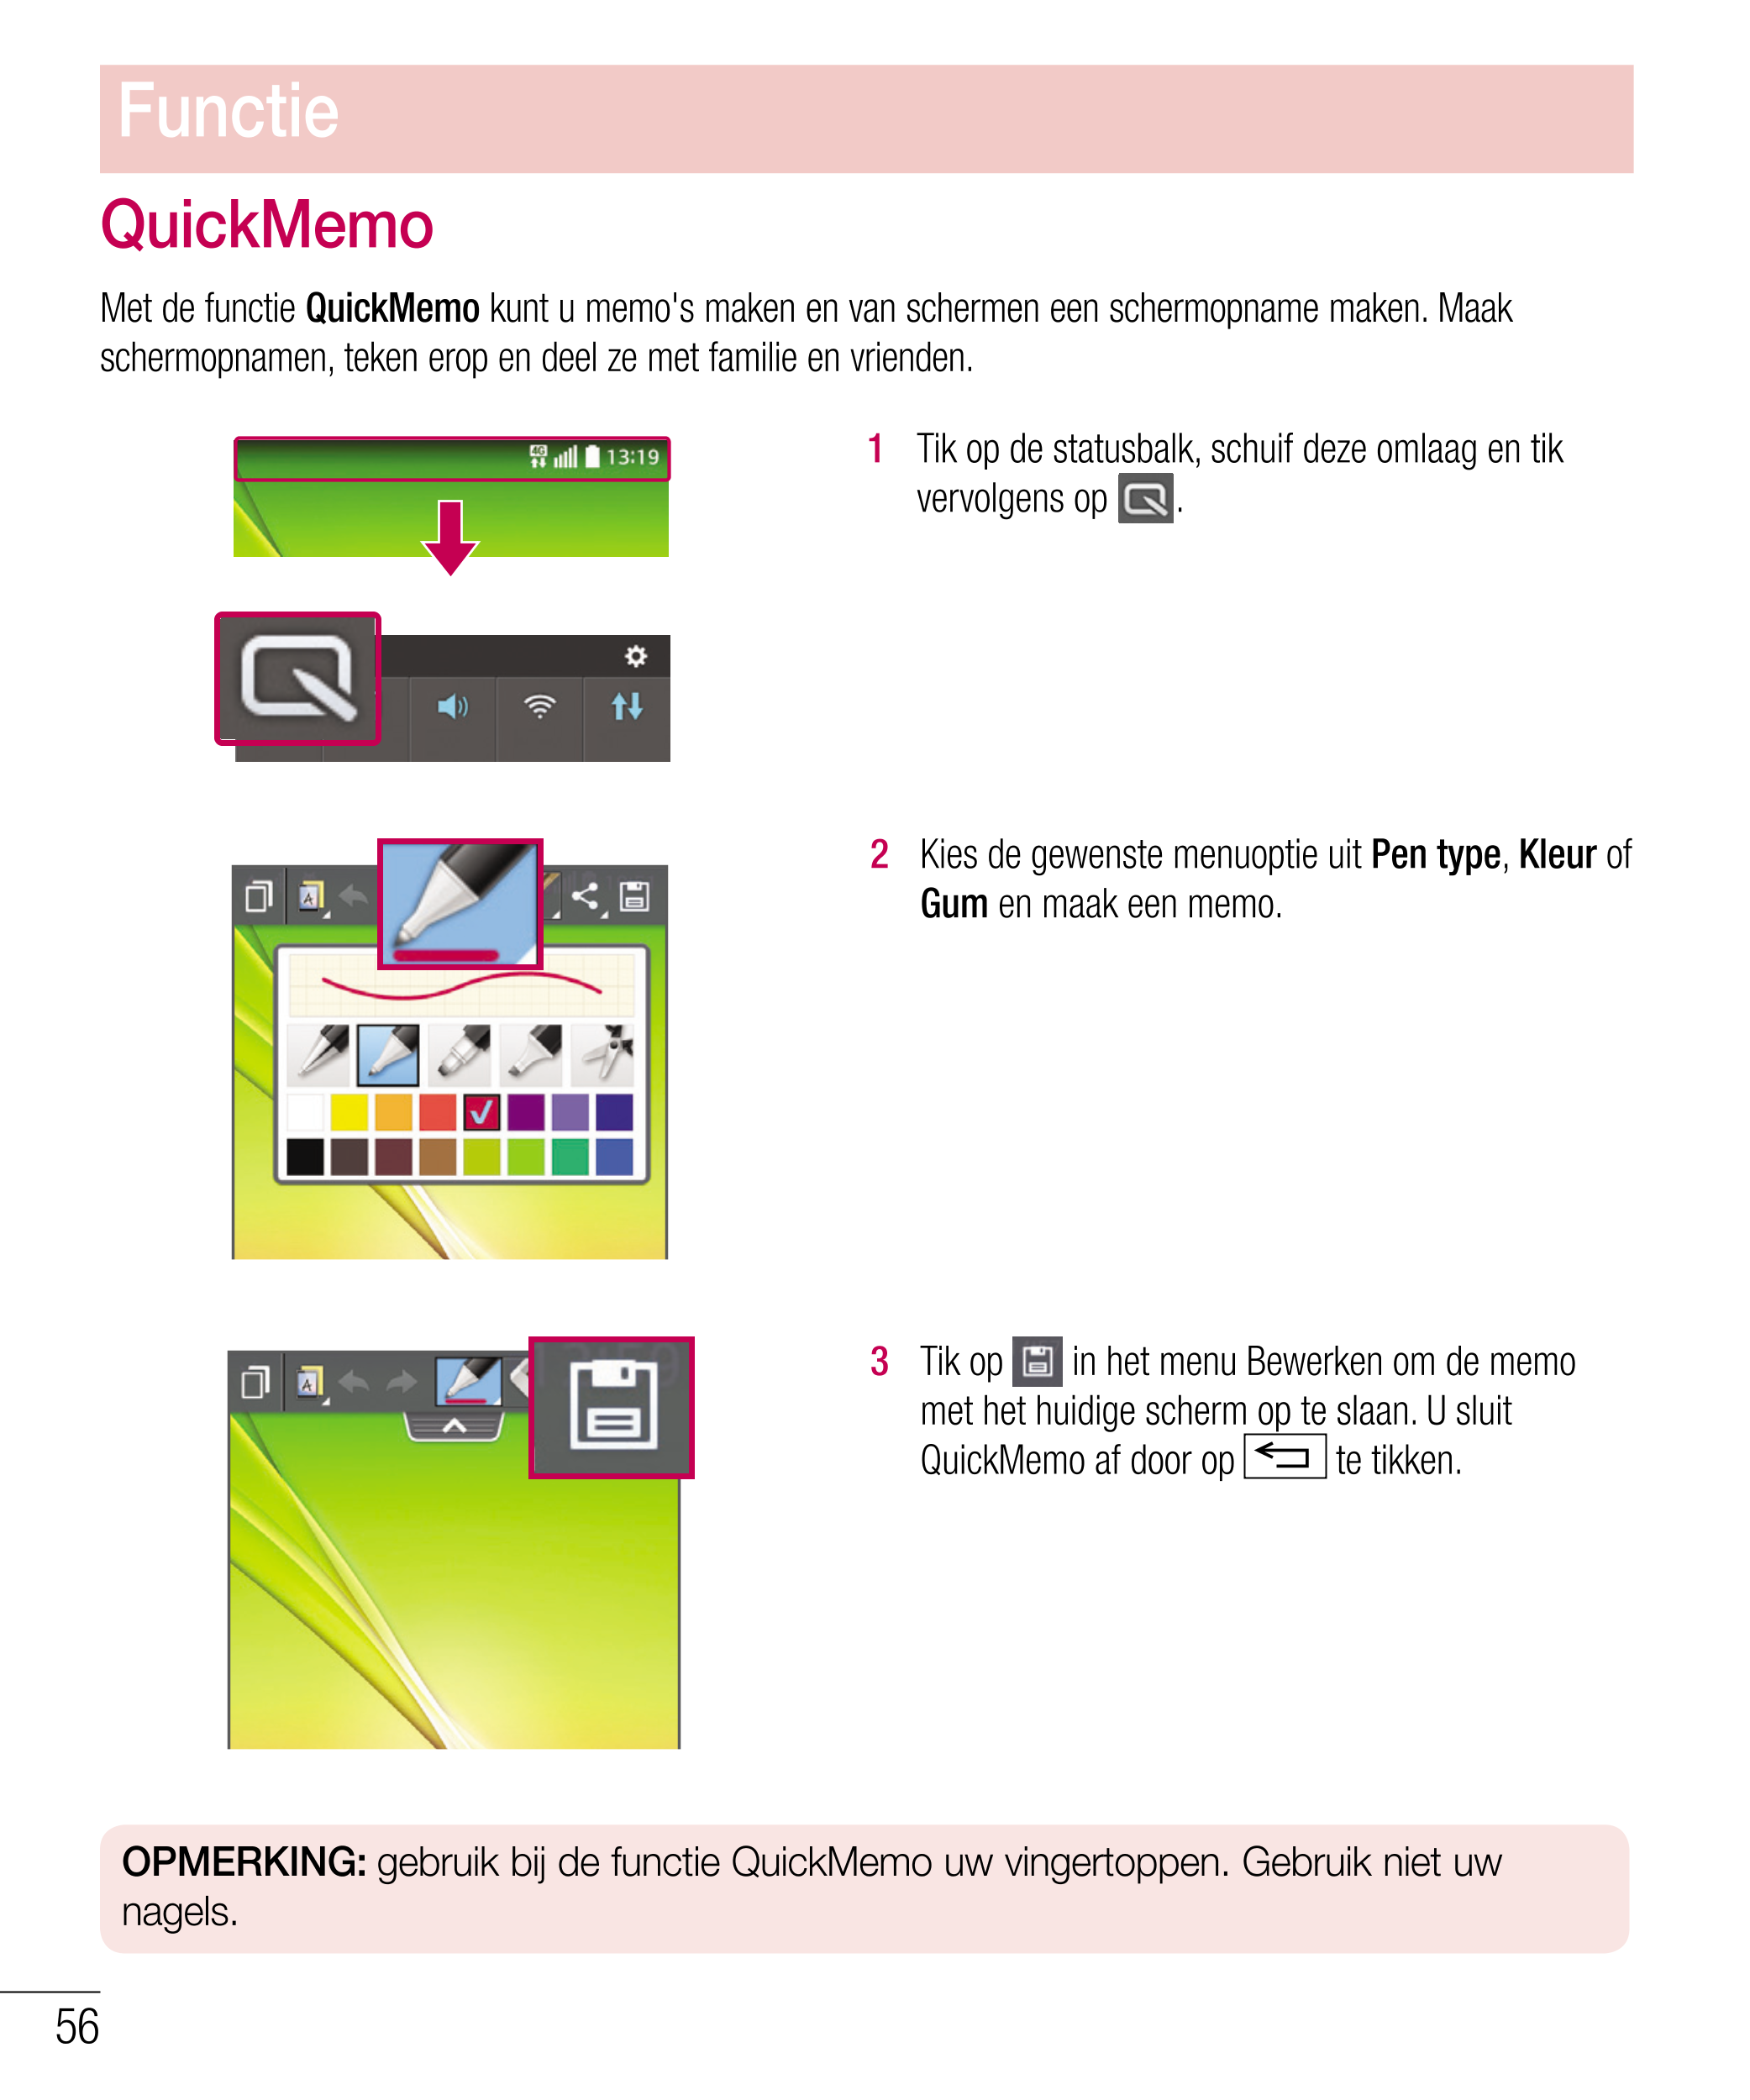 Functie
QuickMemo
Met de functie  QuickMemo  kunt u memo's maken en van schermen een schermopname maken. Maak 
schermopnamen, te